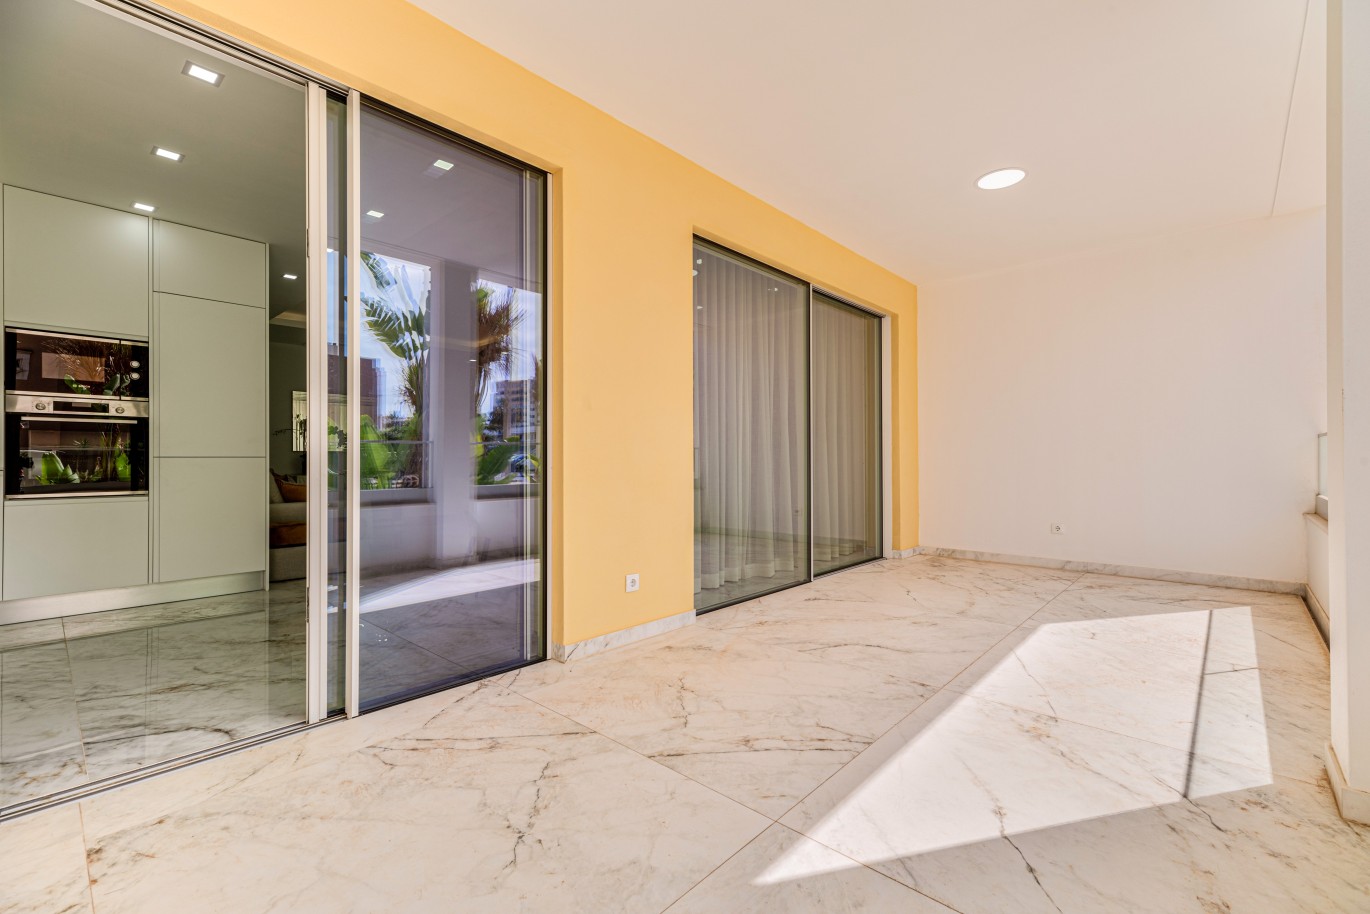 Apartamento, com terraço, para venda, em Lagos, Algarve_237980